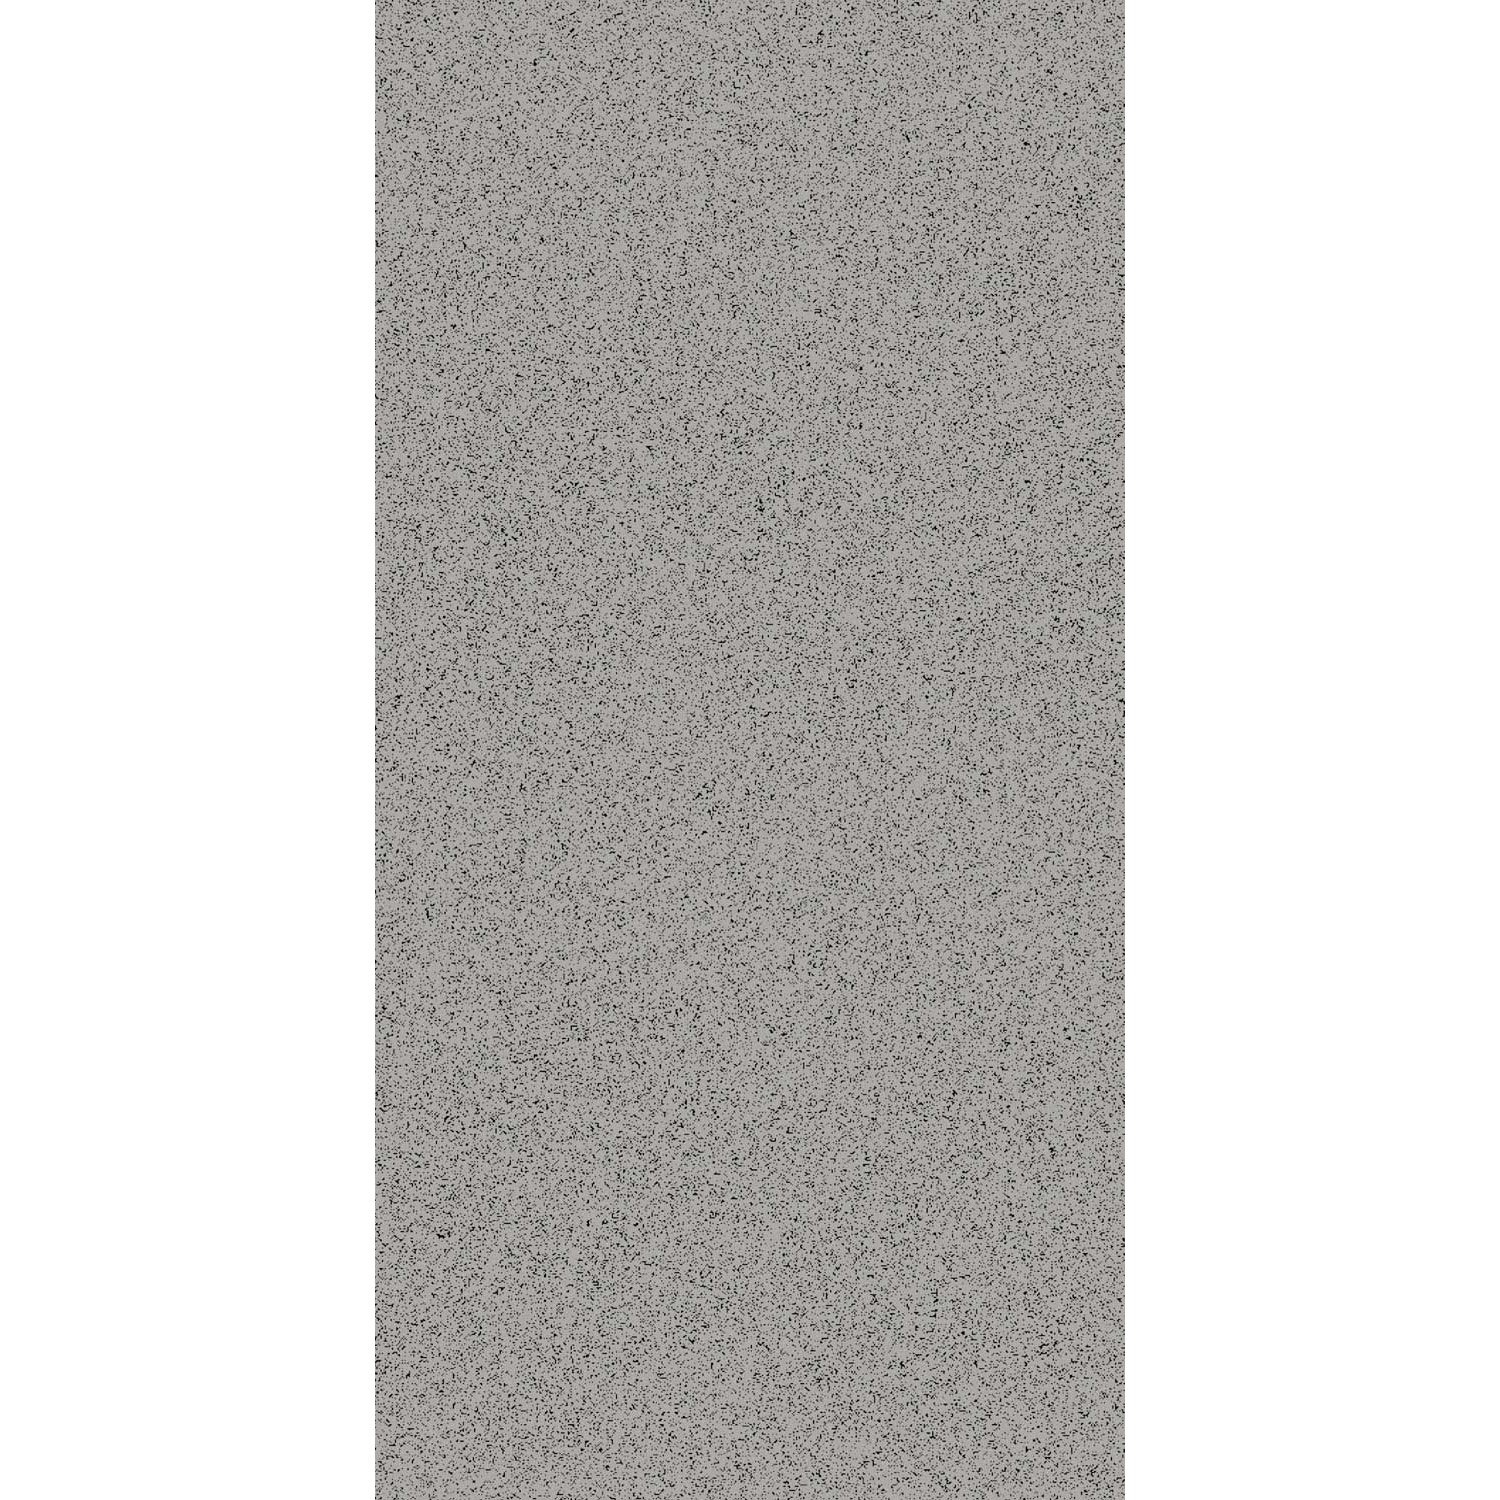 фото Плитка kerama marazzi натива серый sp120110n 9,8x19,8 см